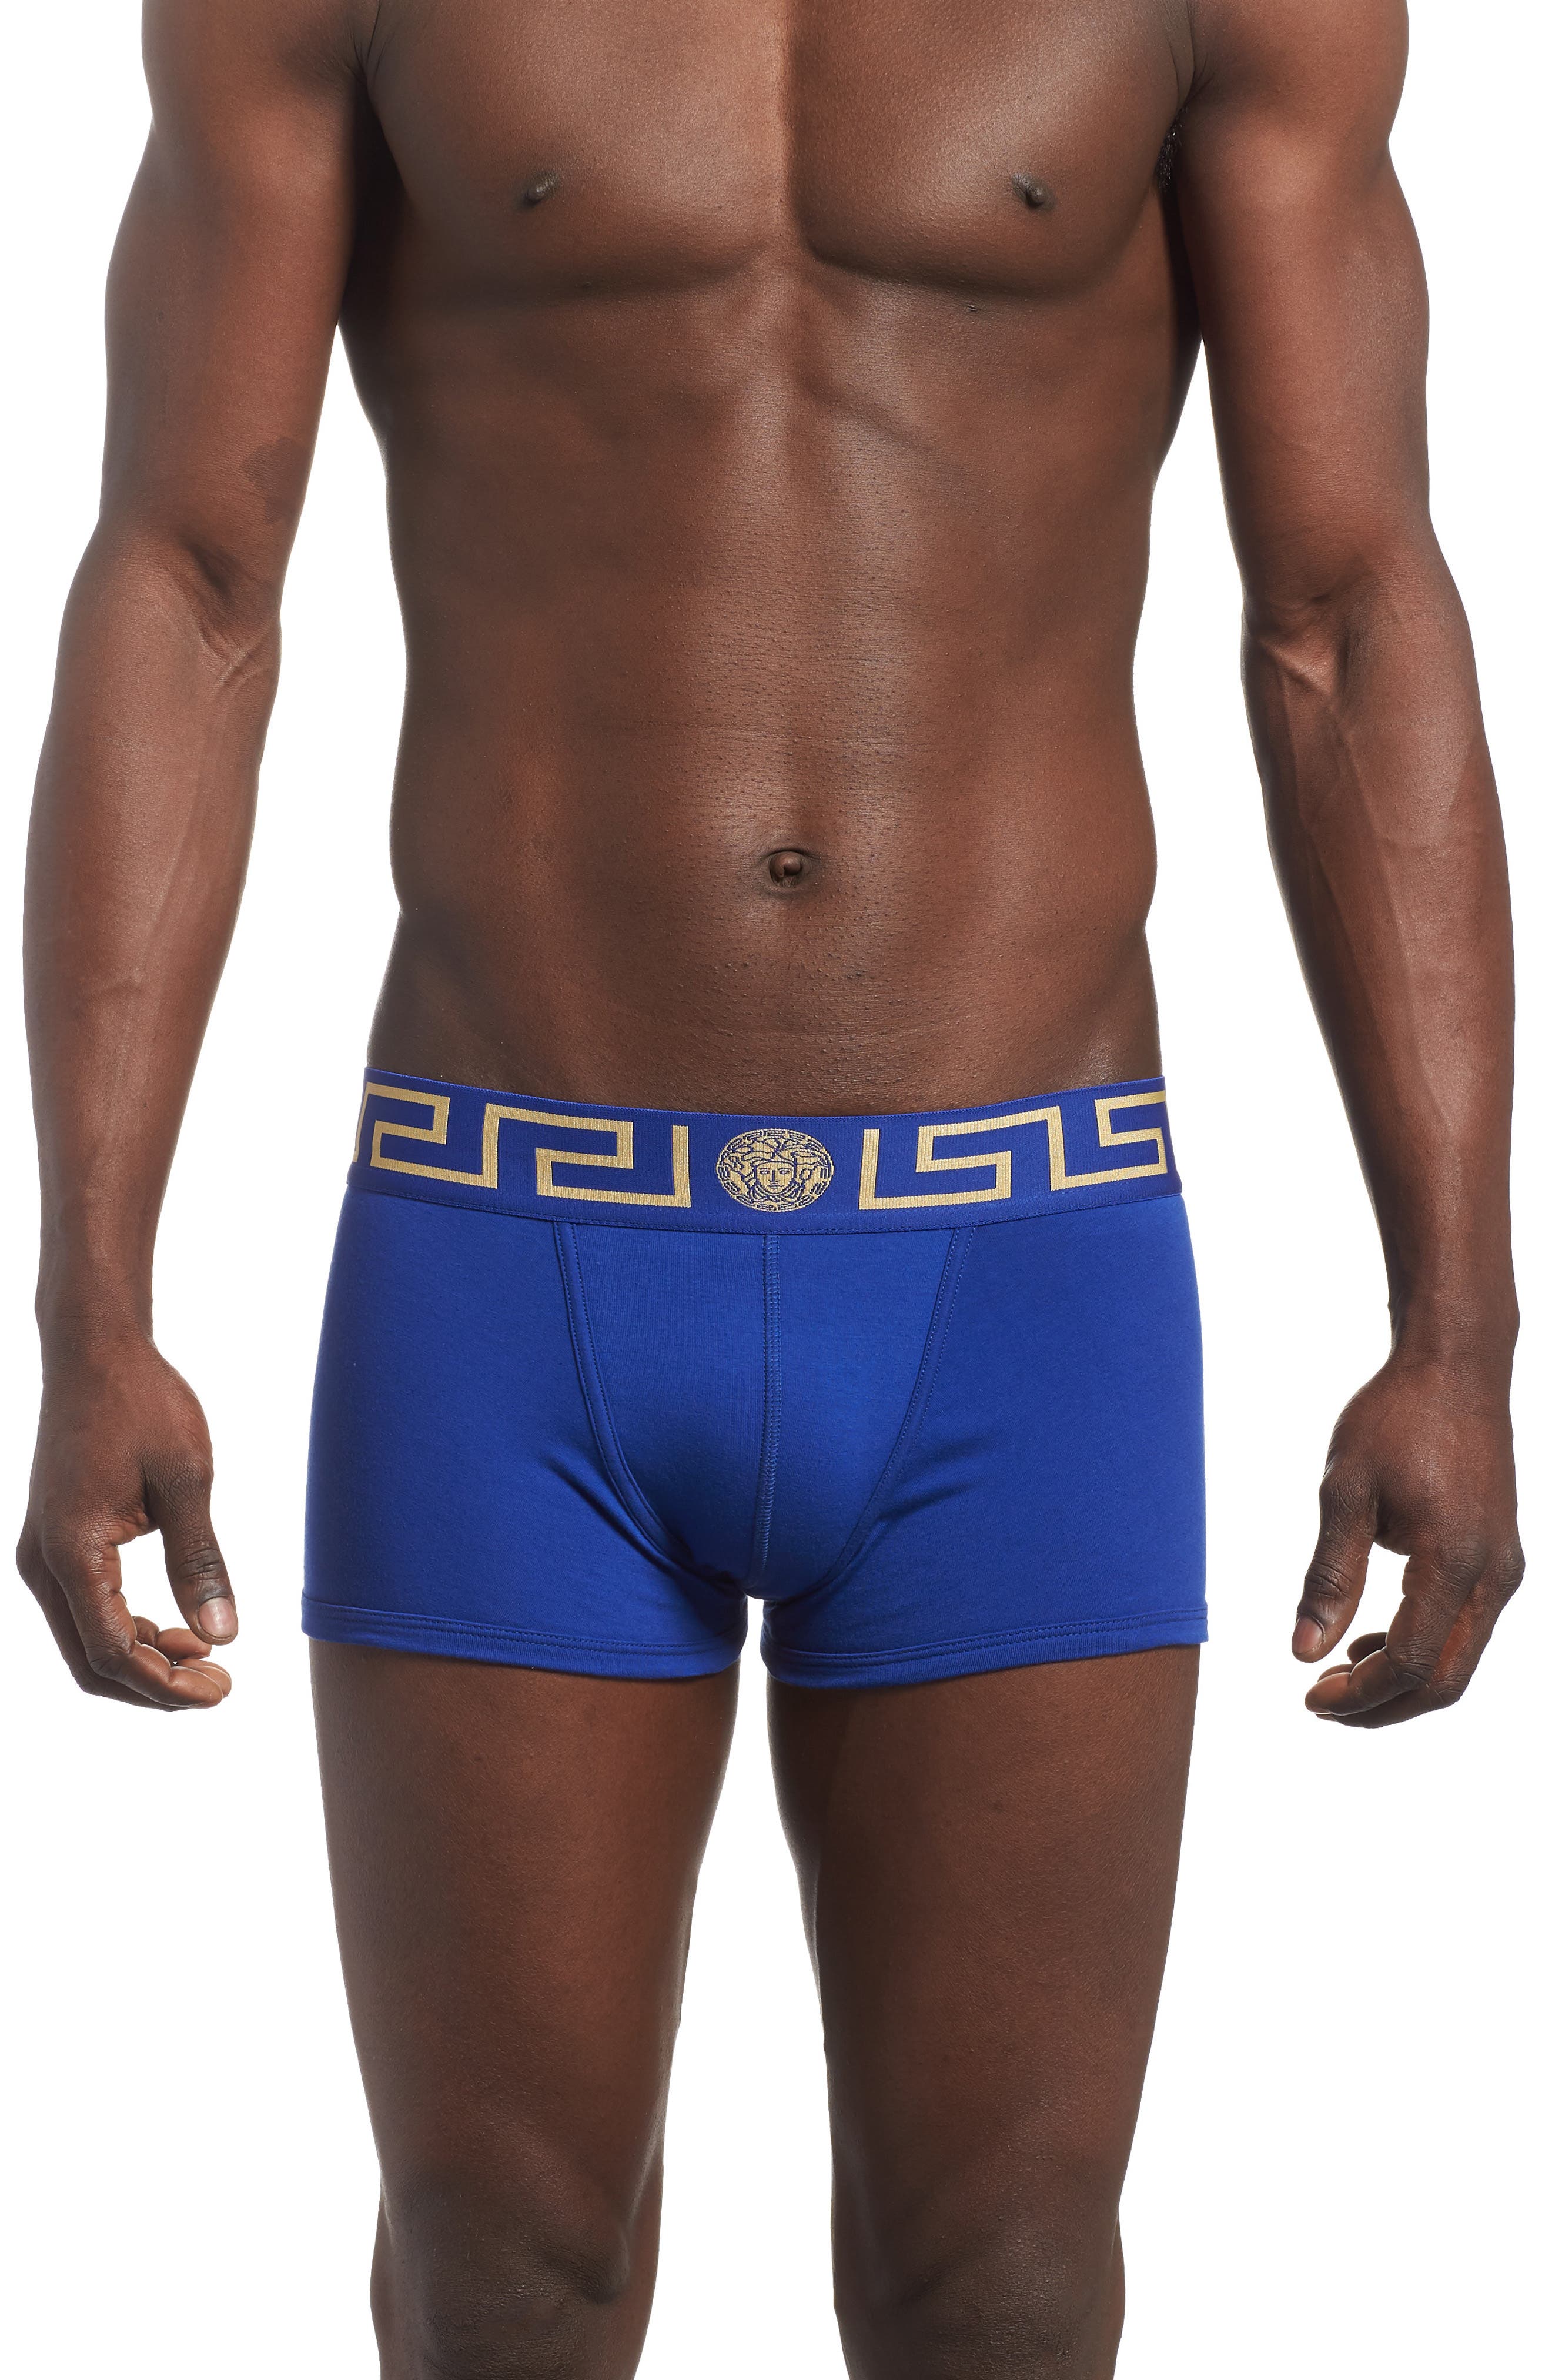 versace underwear blue